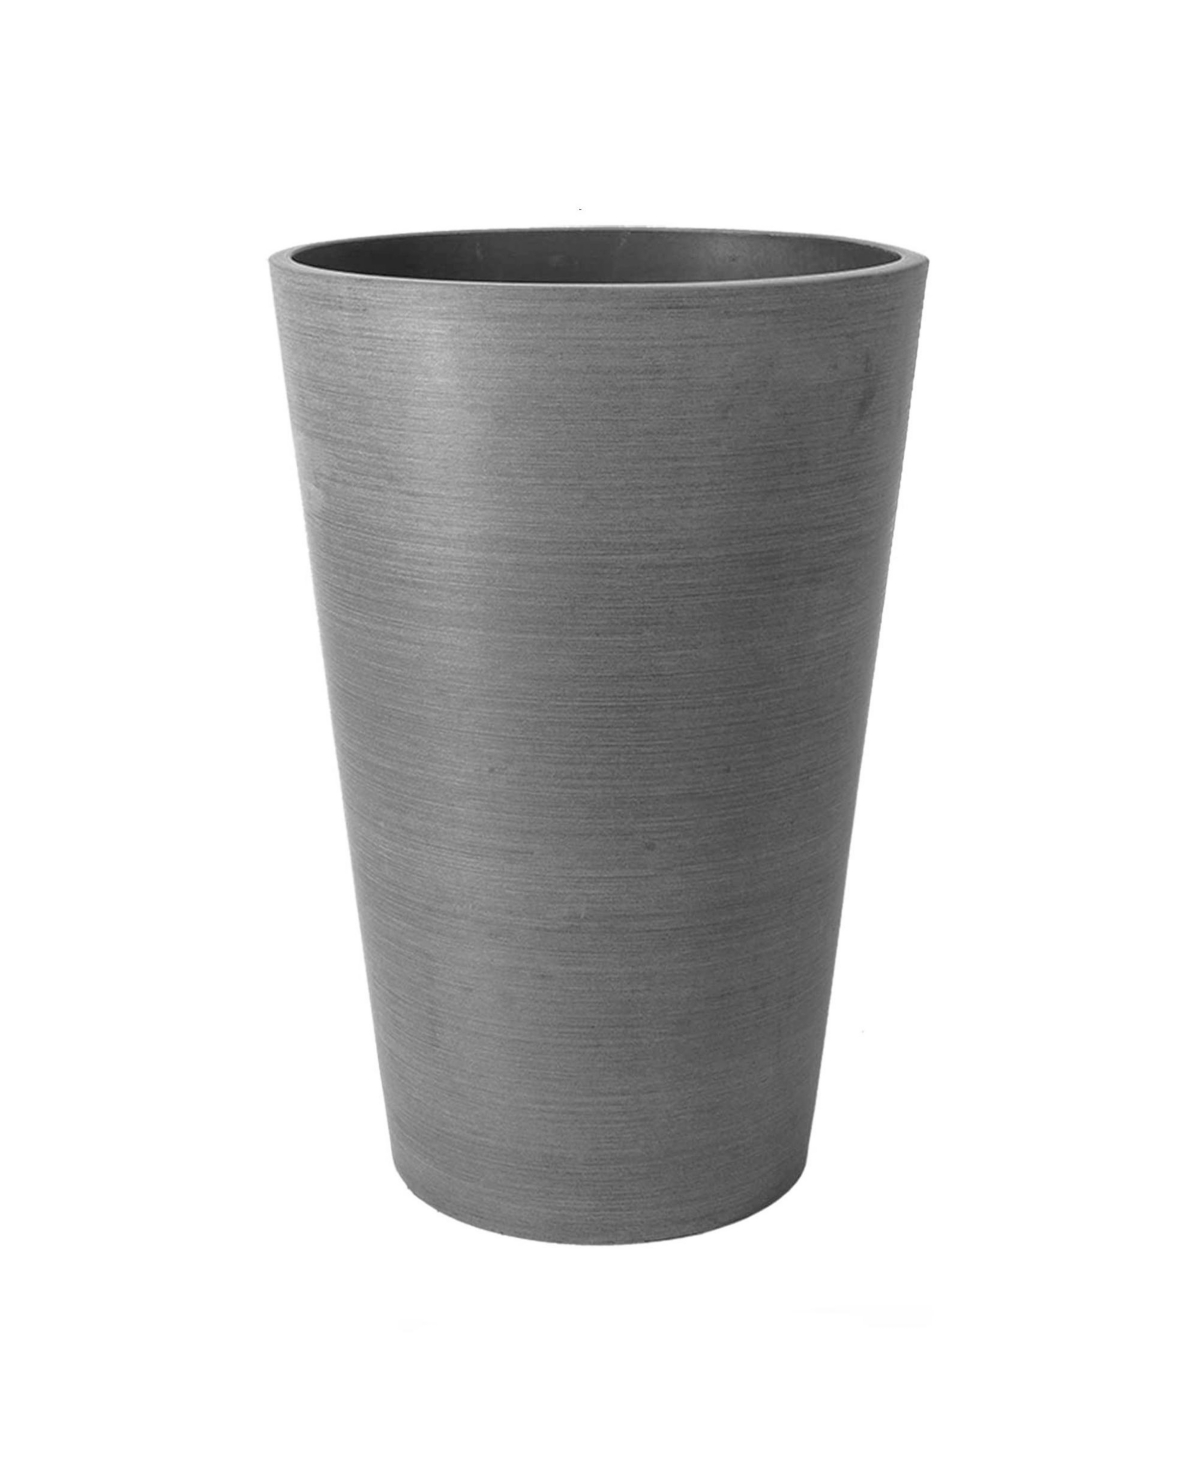 Algreen Valencia Round Outdoor Planter Pot Charcoal Gray 16